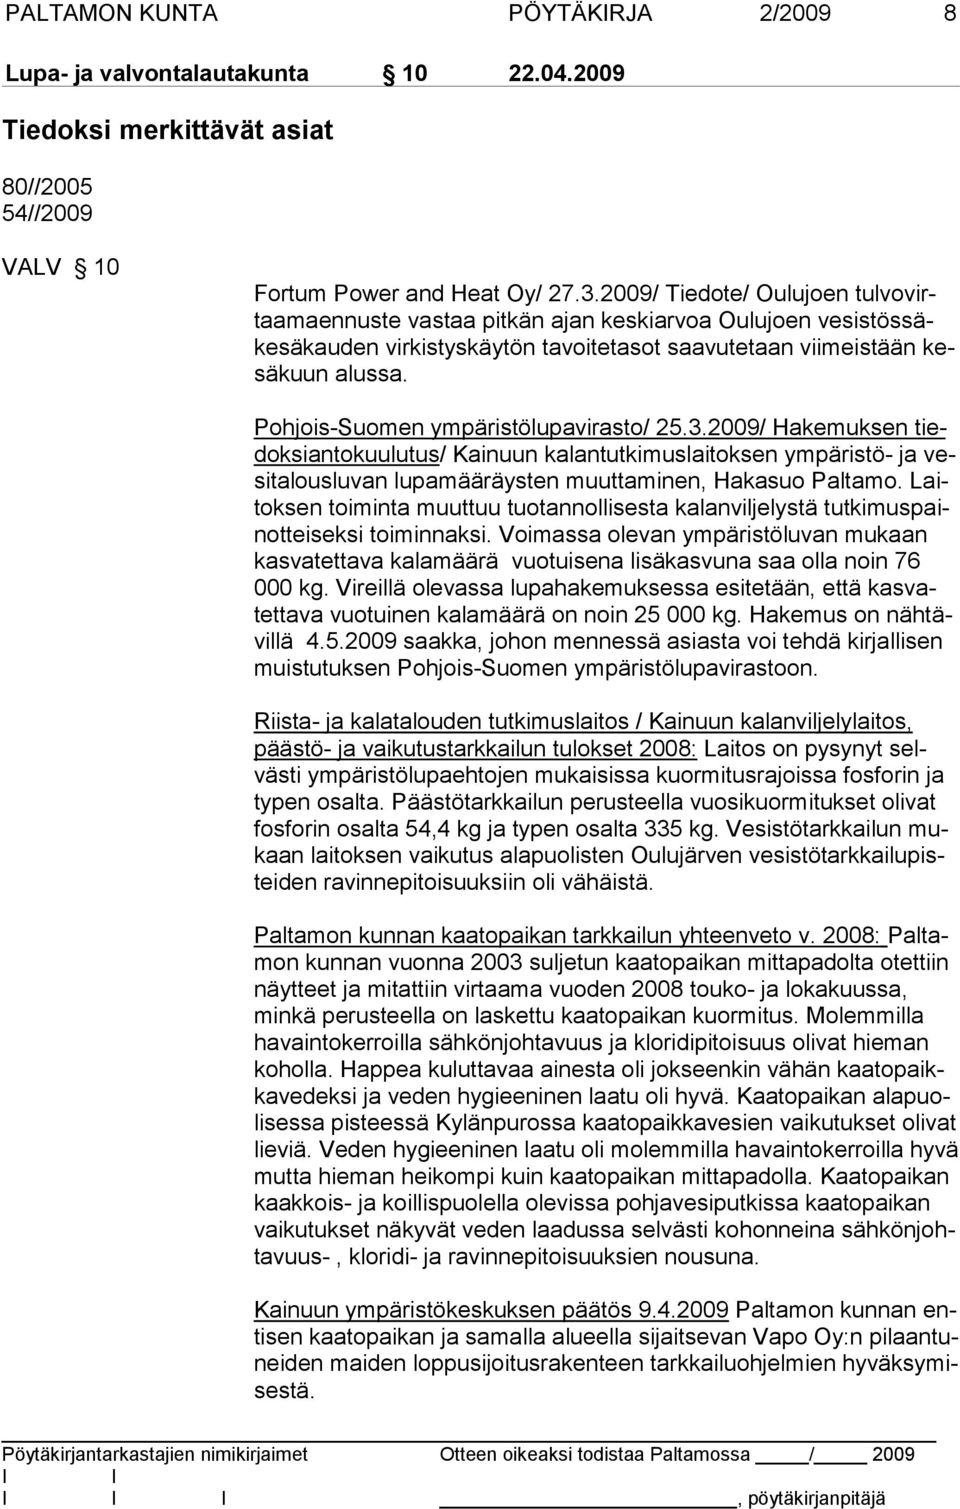 Pohjois-Suomen ympäristölupavirasto/ 25.3.2009/ Hakemuksen tiedoksiantokuulutus/ Kainuun kalantutkimuslaitoksen ympäristö- ja vesitalousluvan lupamääräysten muuttaminen, Hakasuo Paltamo.